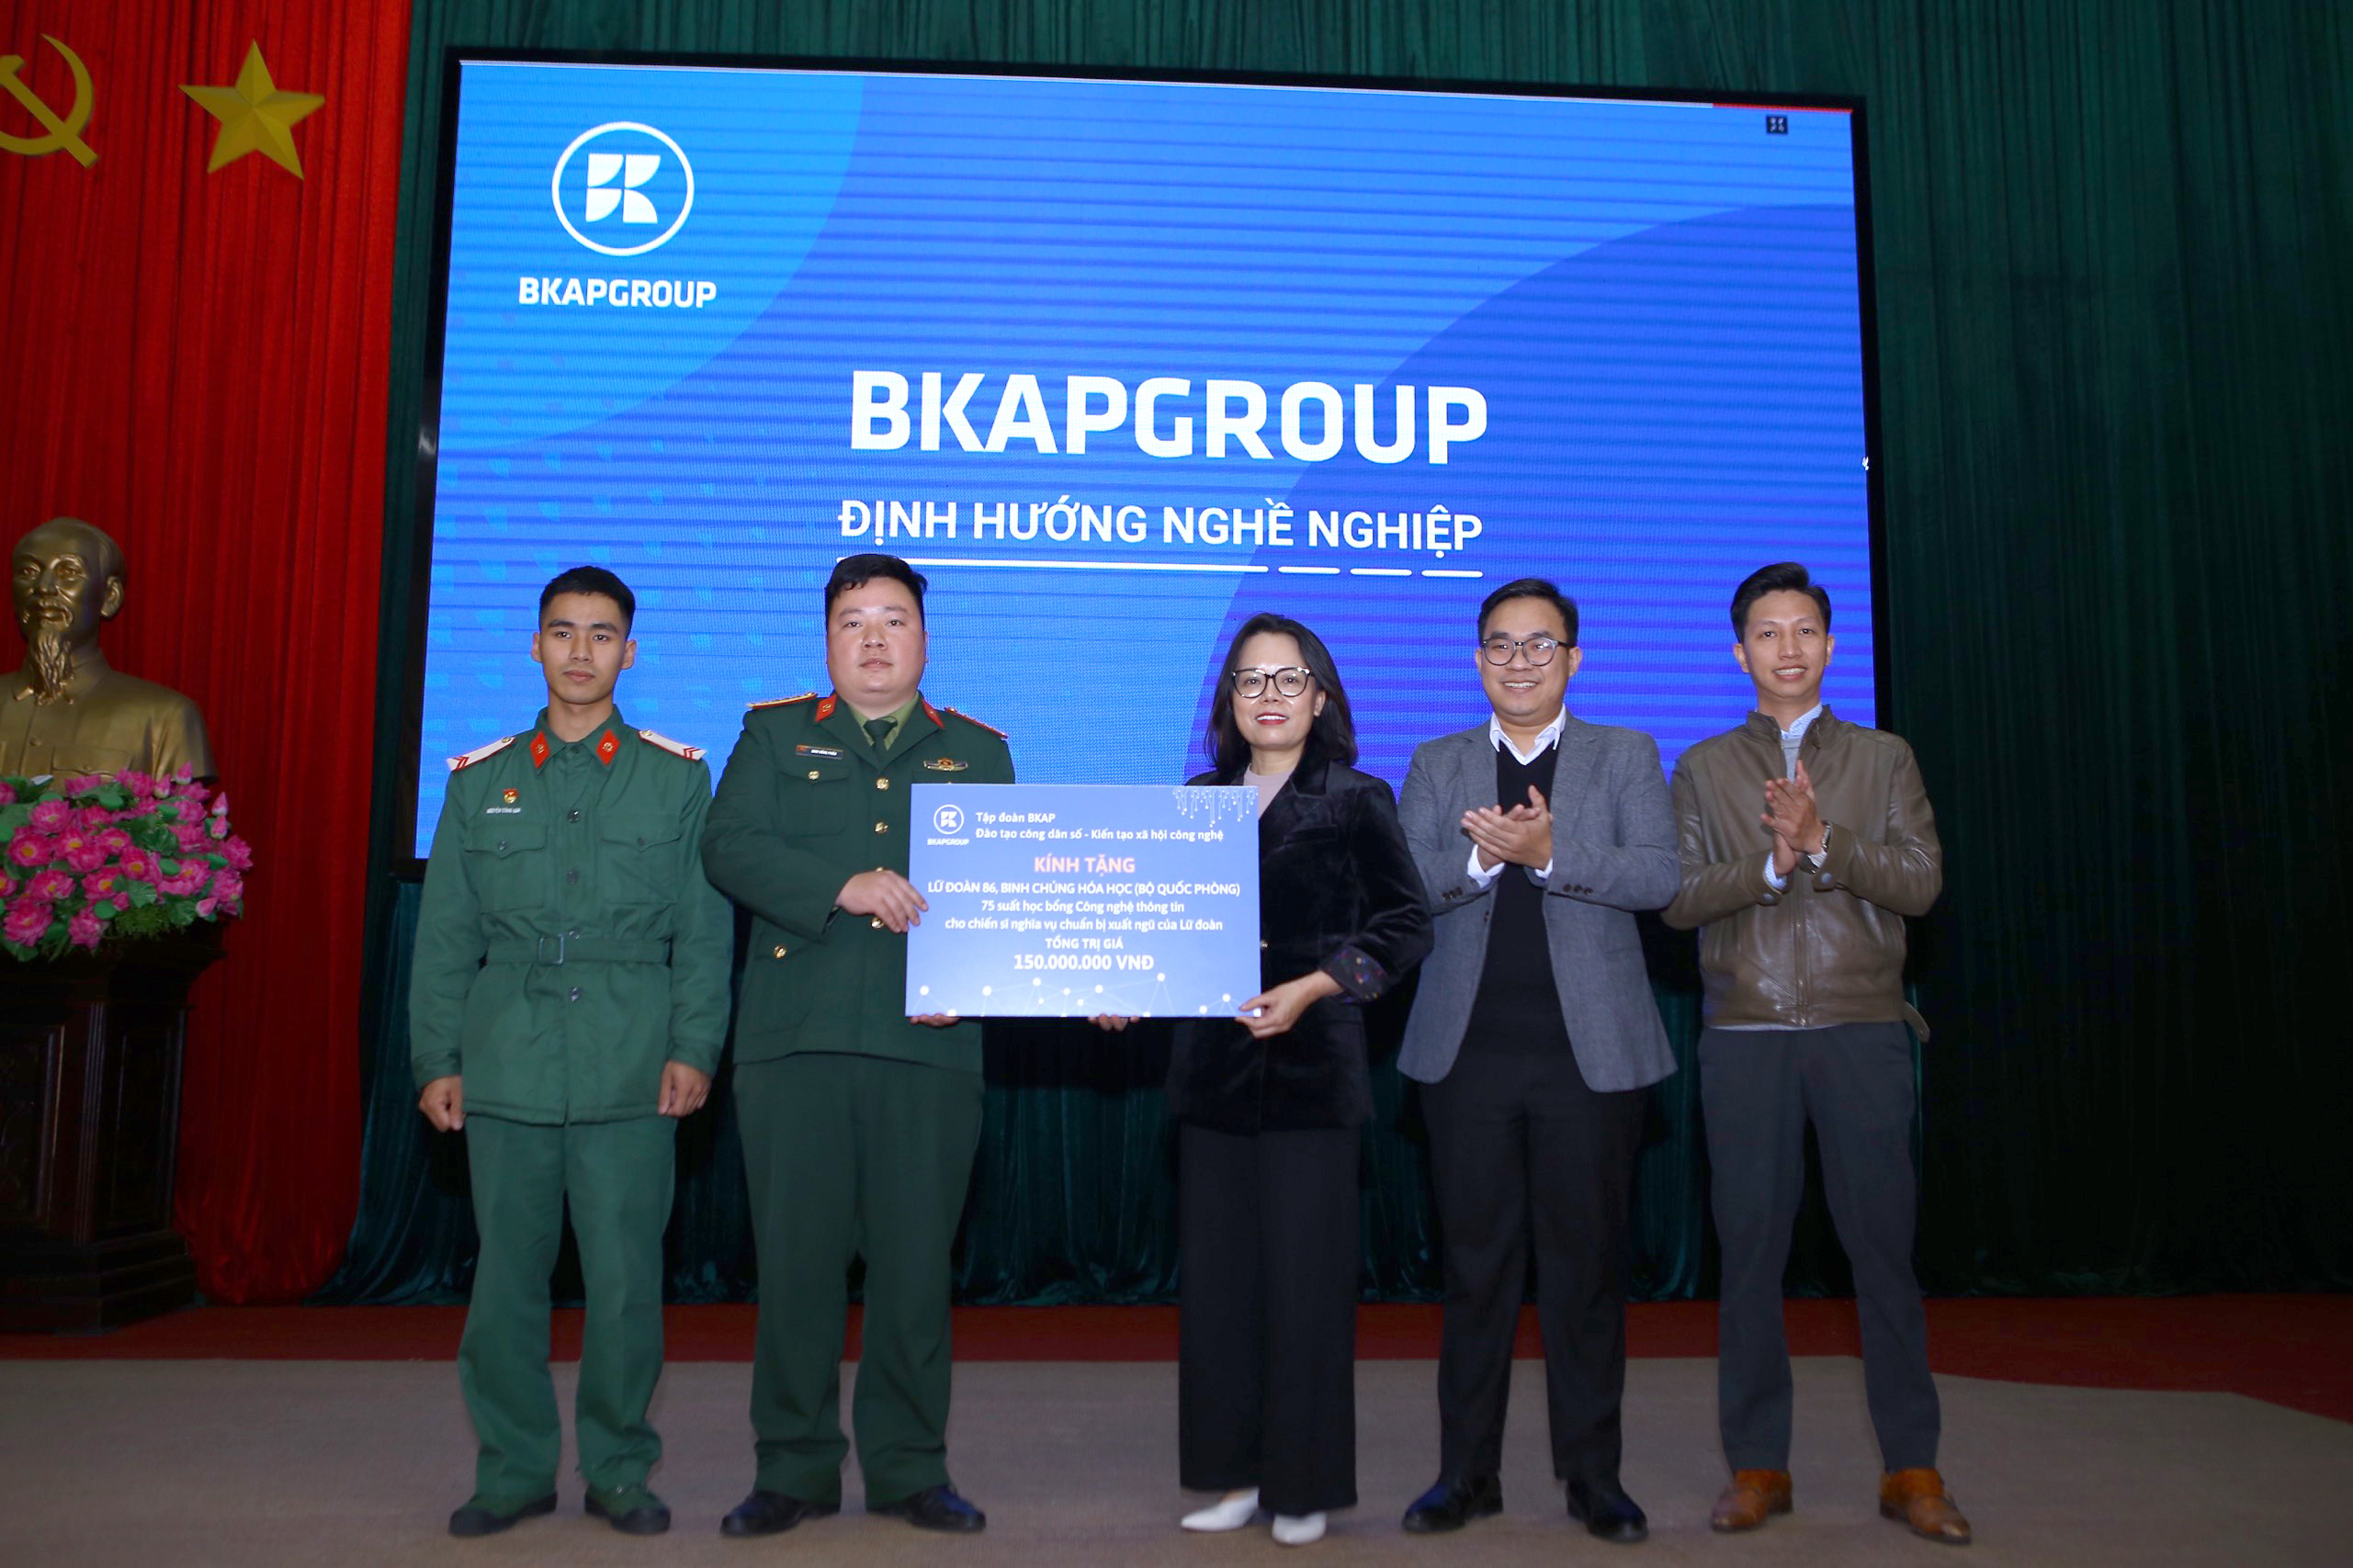 bkapgroup tư vấn hướng nghiệp và trao 75 suất học bổng CNTT cho các chiến sĩ tại Lữ đoàn 86